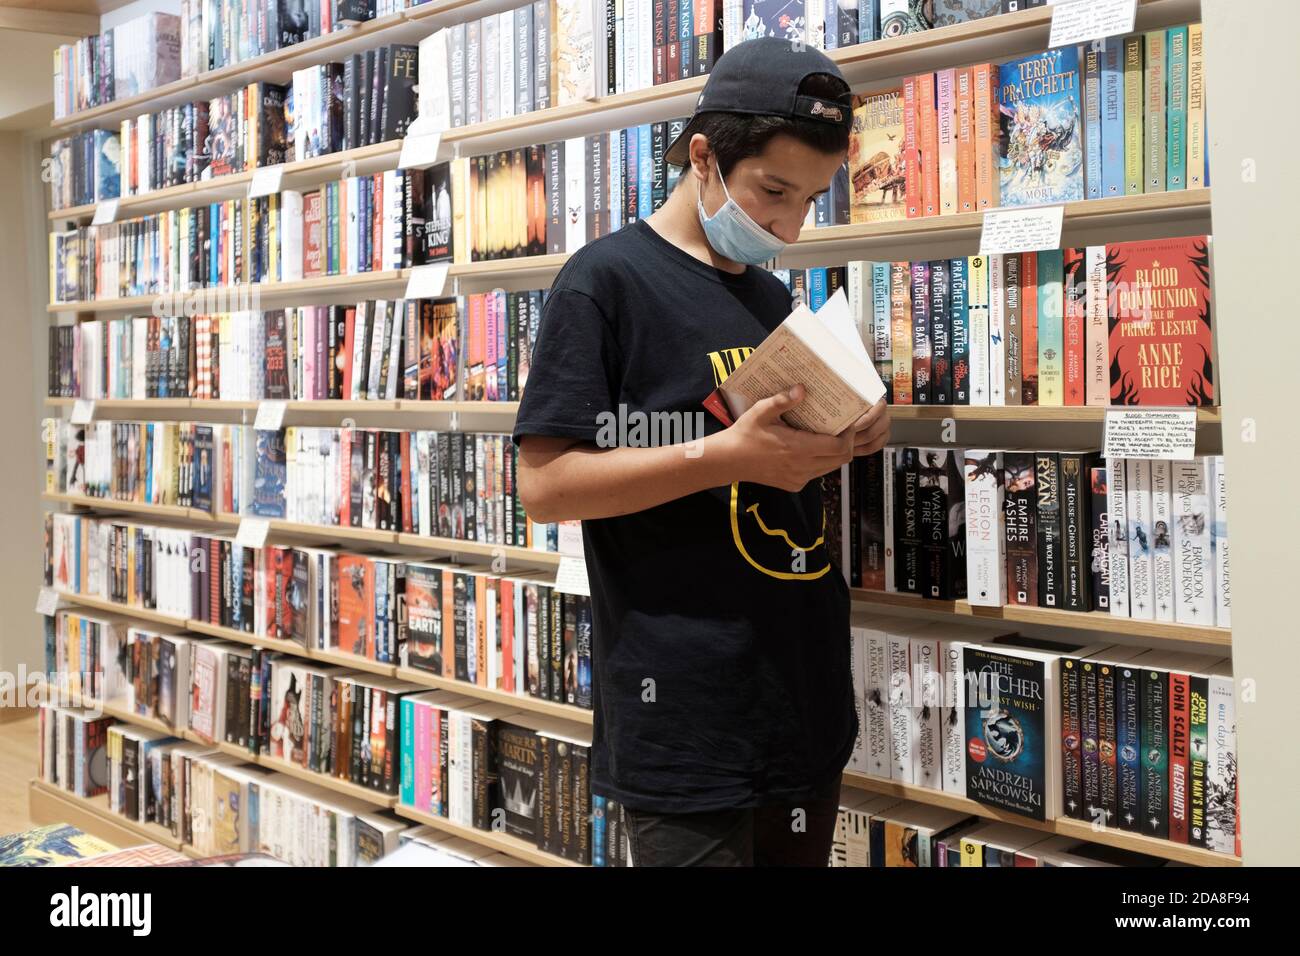 Teenage Boy, 13-14 ans, Wearing gace masque choisir des livres dans la librairie, Londres, Royaume-Uni Banque D'Images